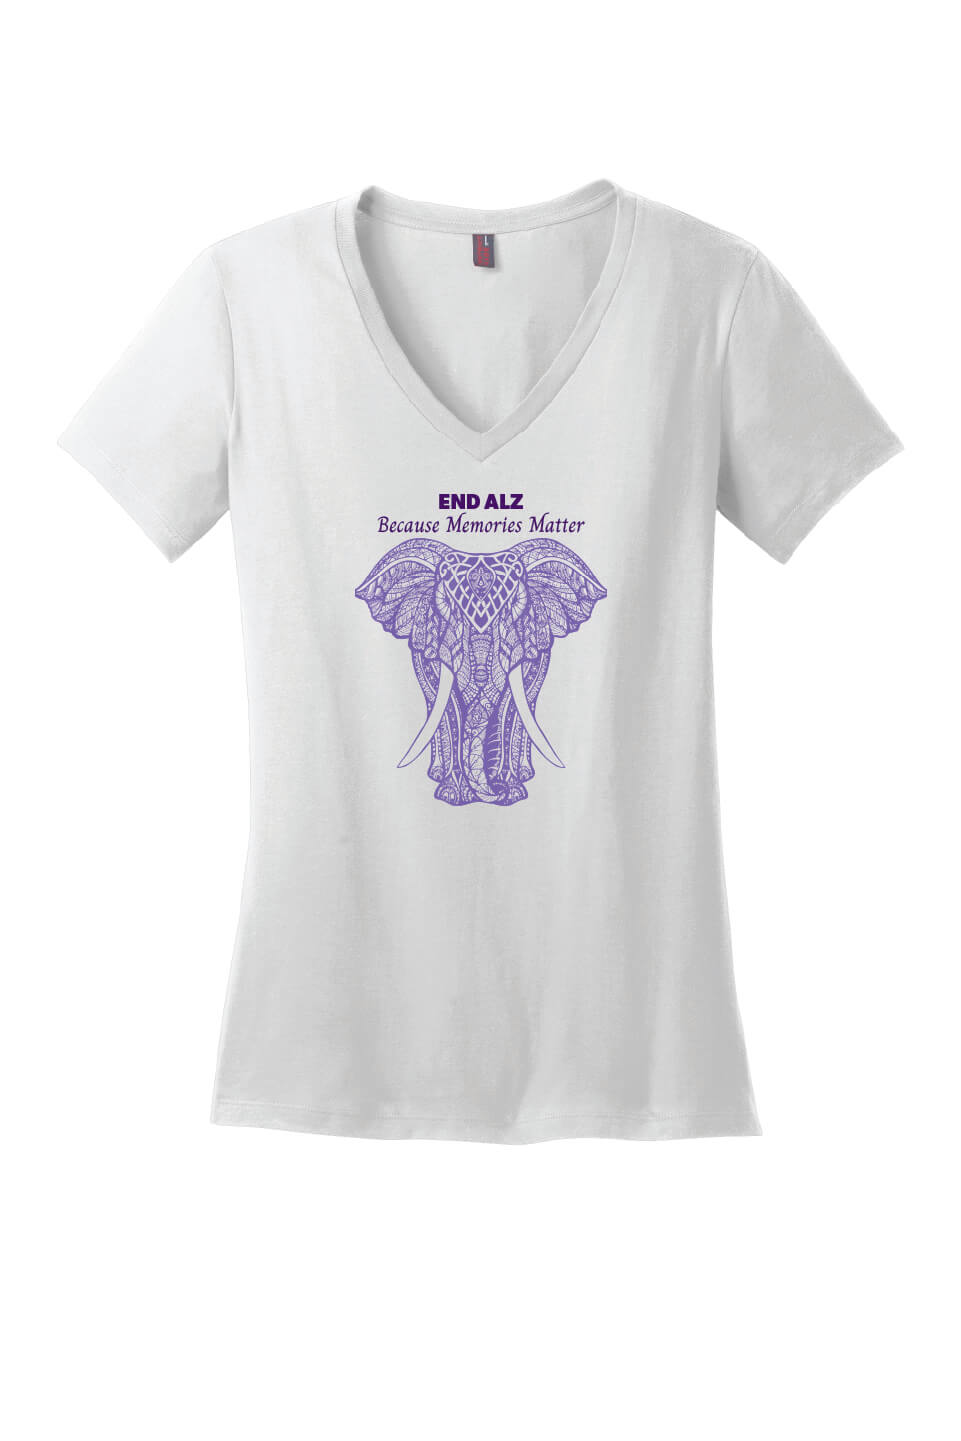 Memories Matter Elephant Ladies V-Neck Short Sleeve T-Shirt